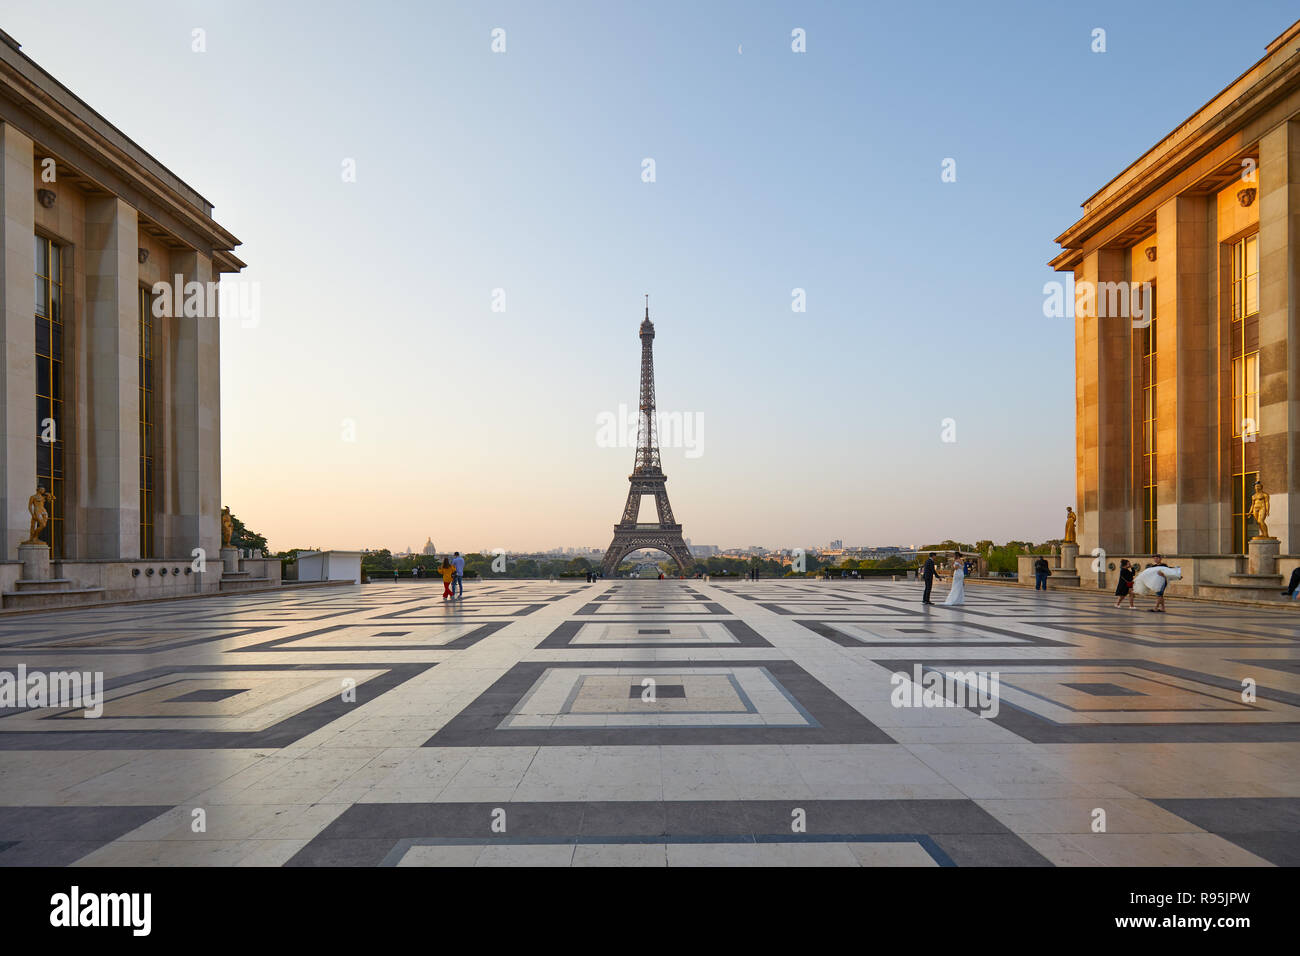 Parigi, Francia - luglio 7, 2018: alla torre Eiffel e al Trocadero con alcune persone in una chiara mattina d'estate a Parigi, Francia Foto Stock